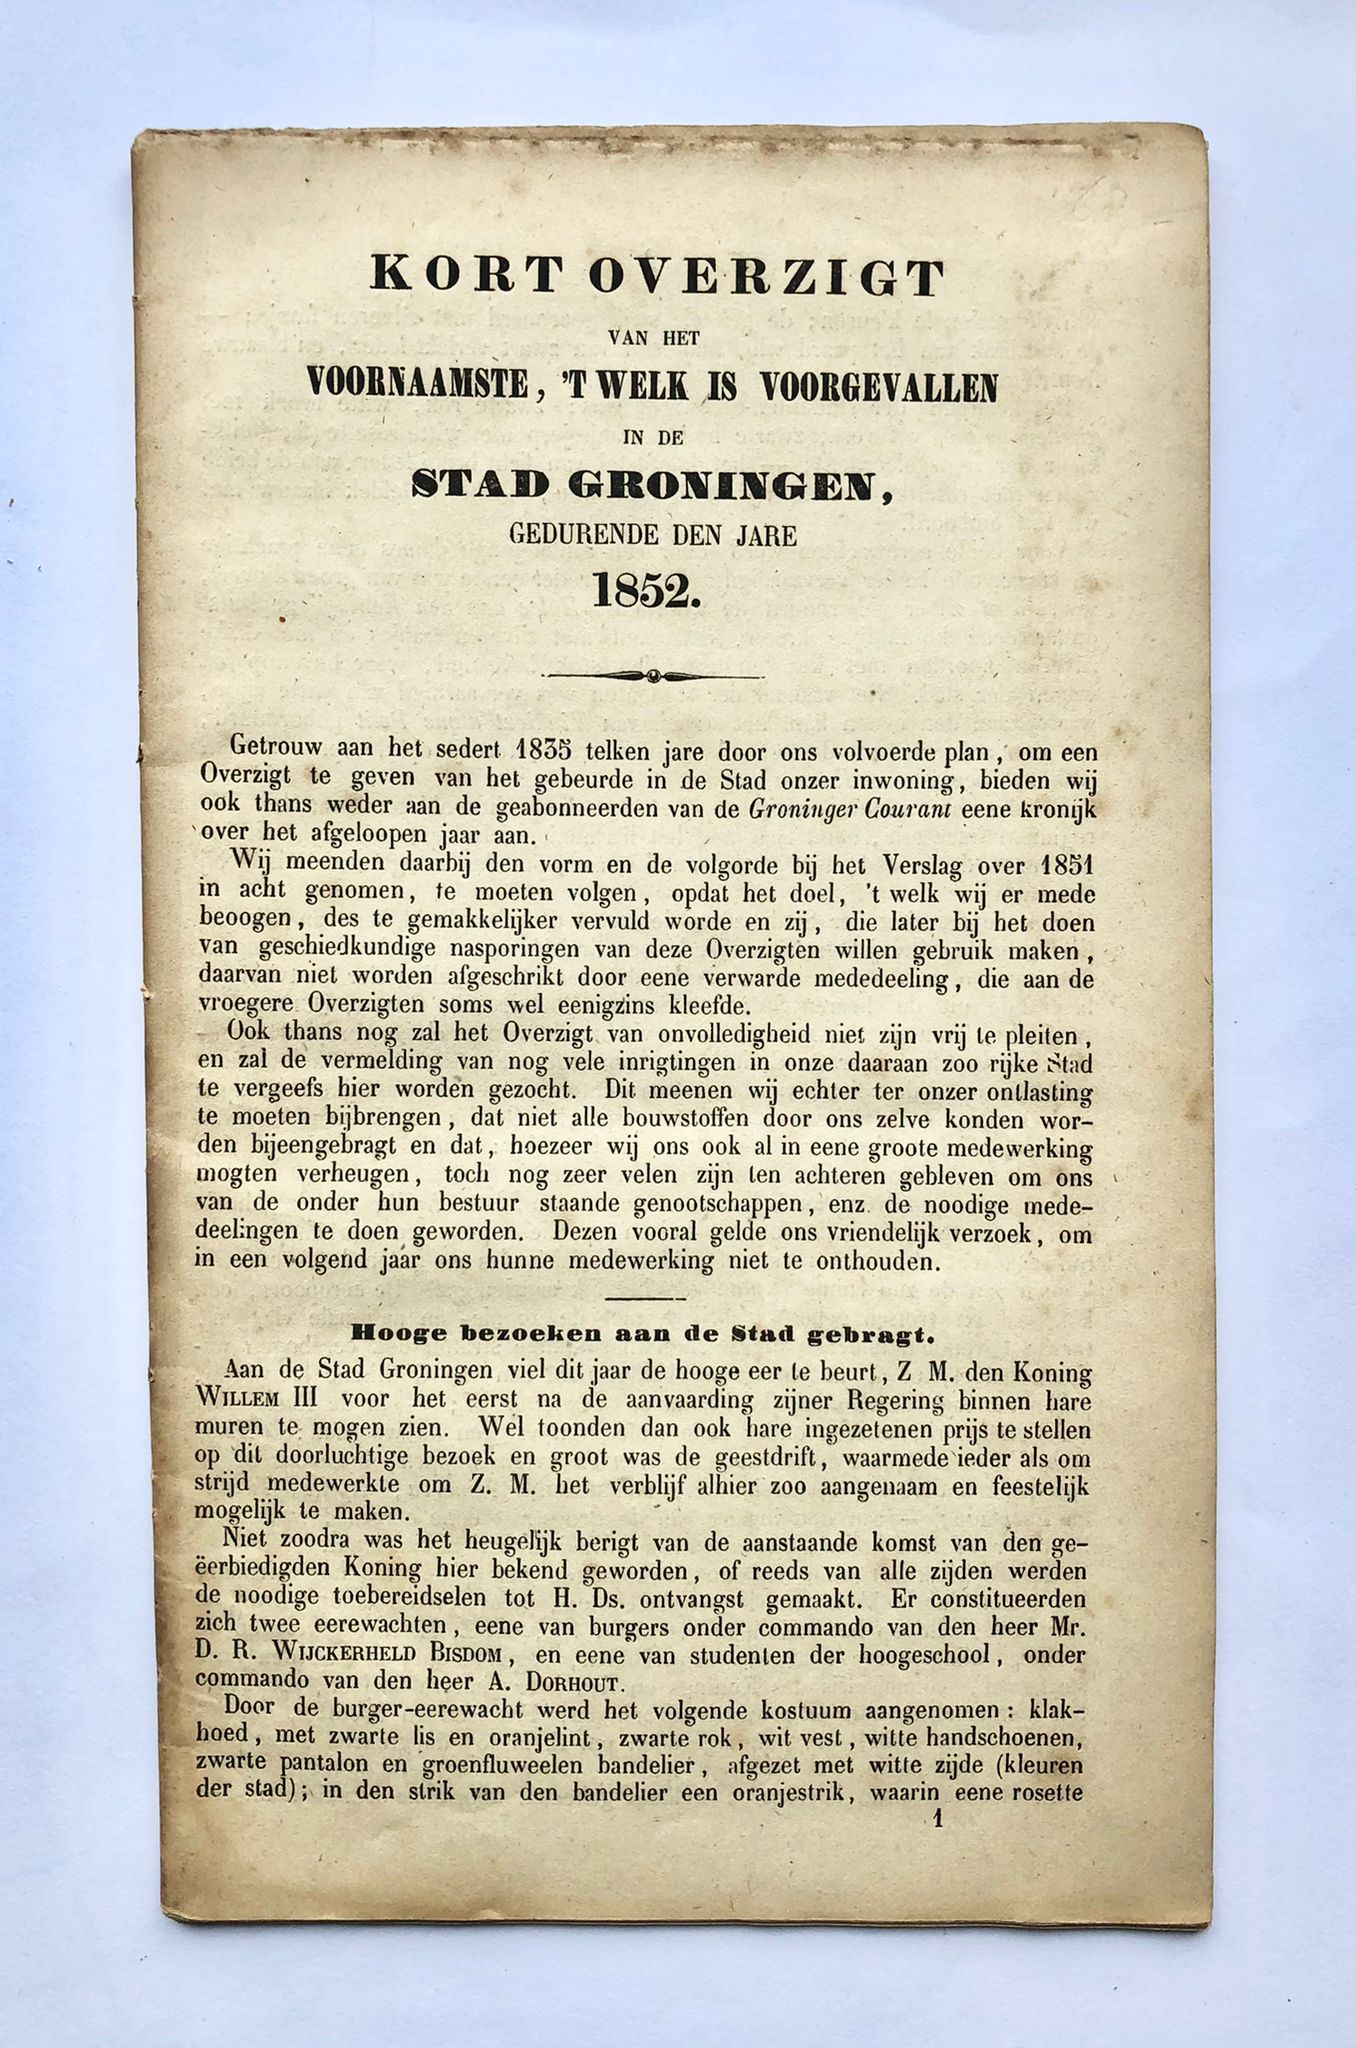 [Groningen, magazine, 1852] Kort overzigt van het voornaamste, ’t welk is voorgevallen in de stad Groningen, gedurende den Jare 1852, bij de Erven C. M. van Bolhuis Hoitsema, Te Groningen, 40 pp.